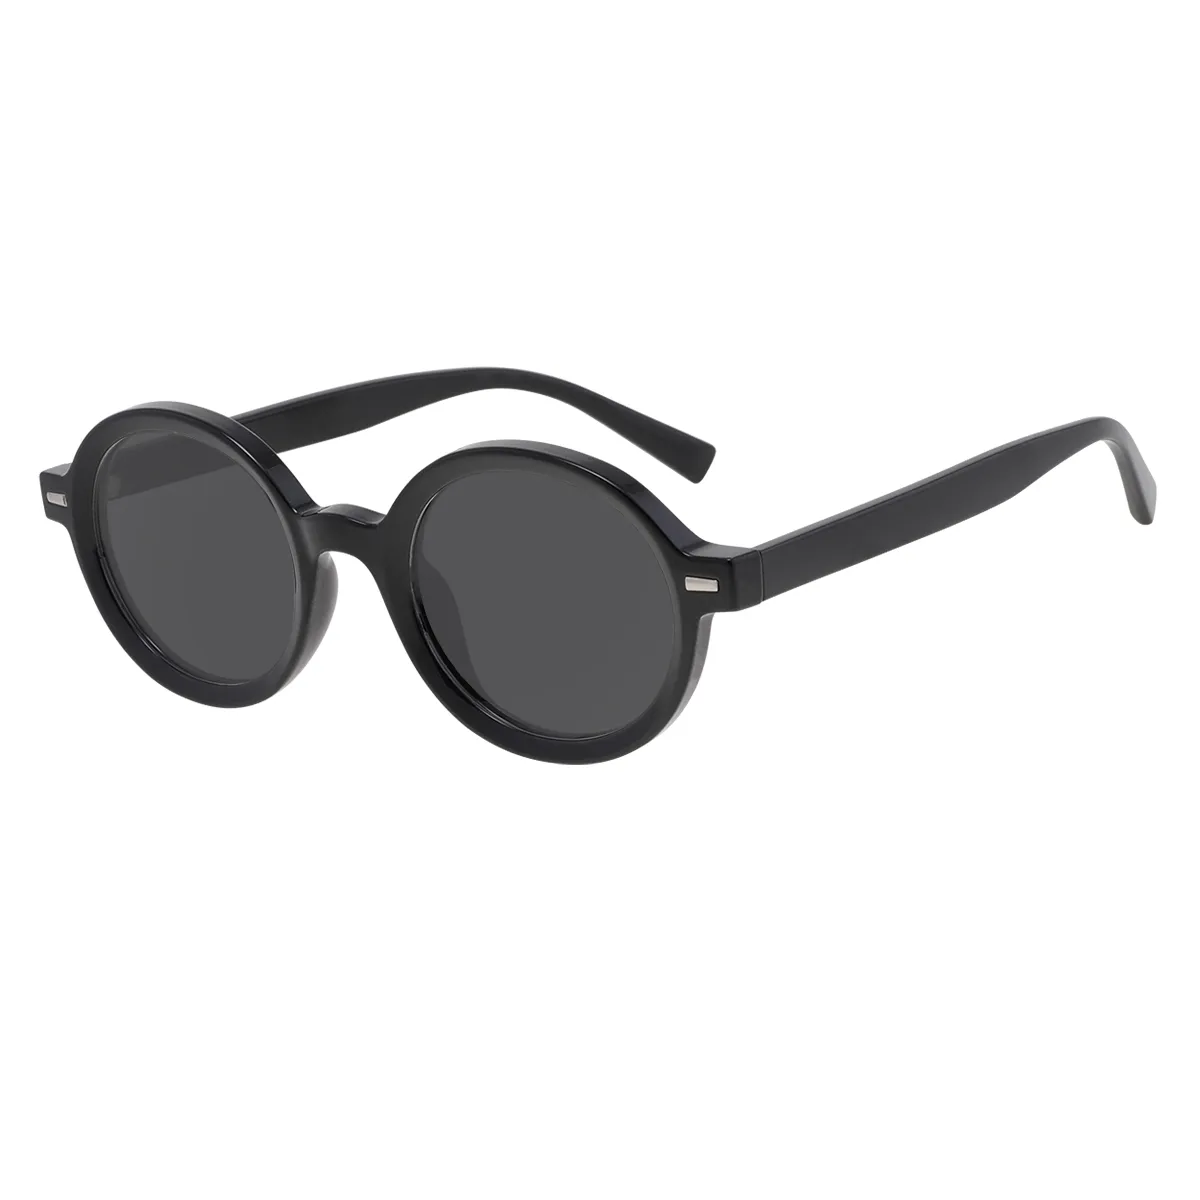 Elsy - Round Black Sunglasses for Men & Women